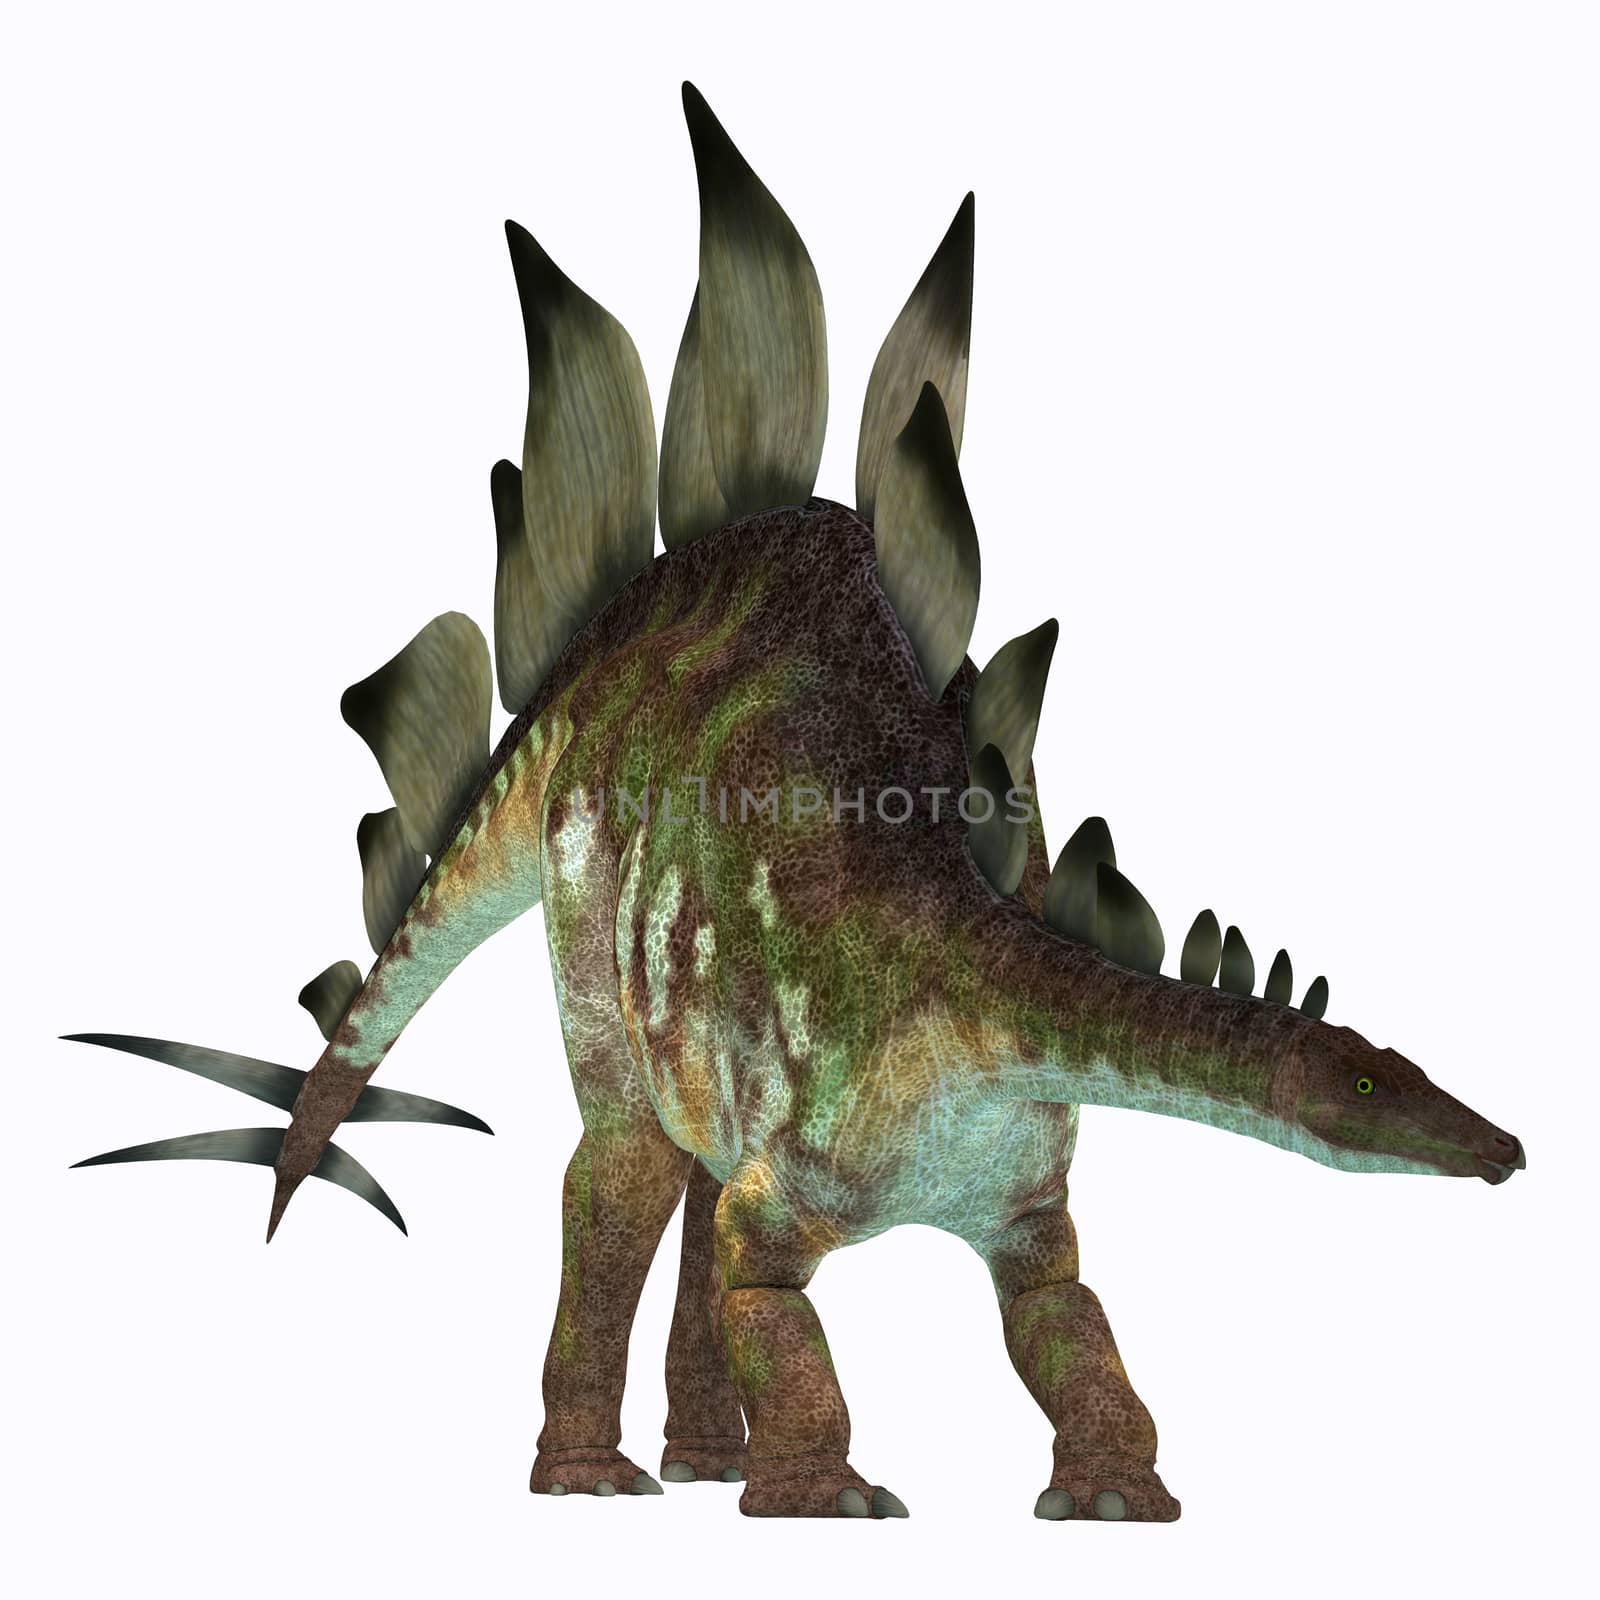 Stegosaurus Dinosaur on White by Catmando